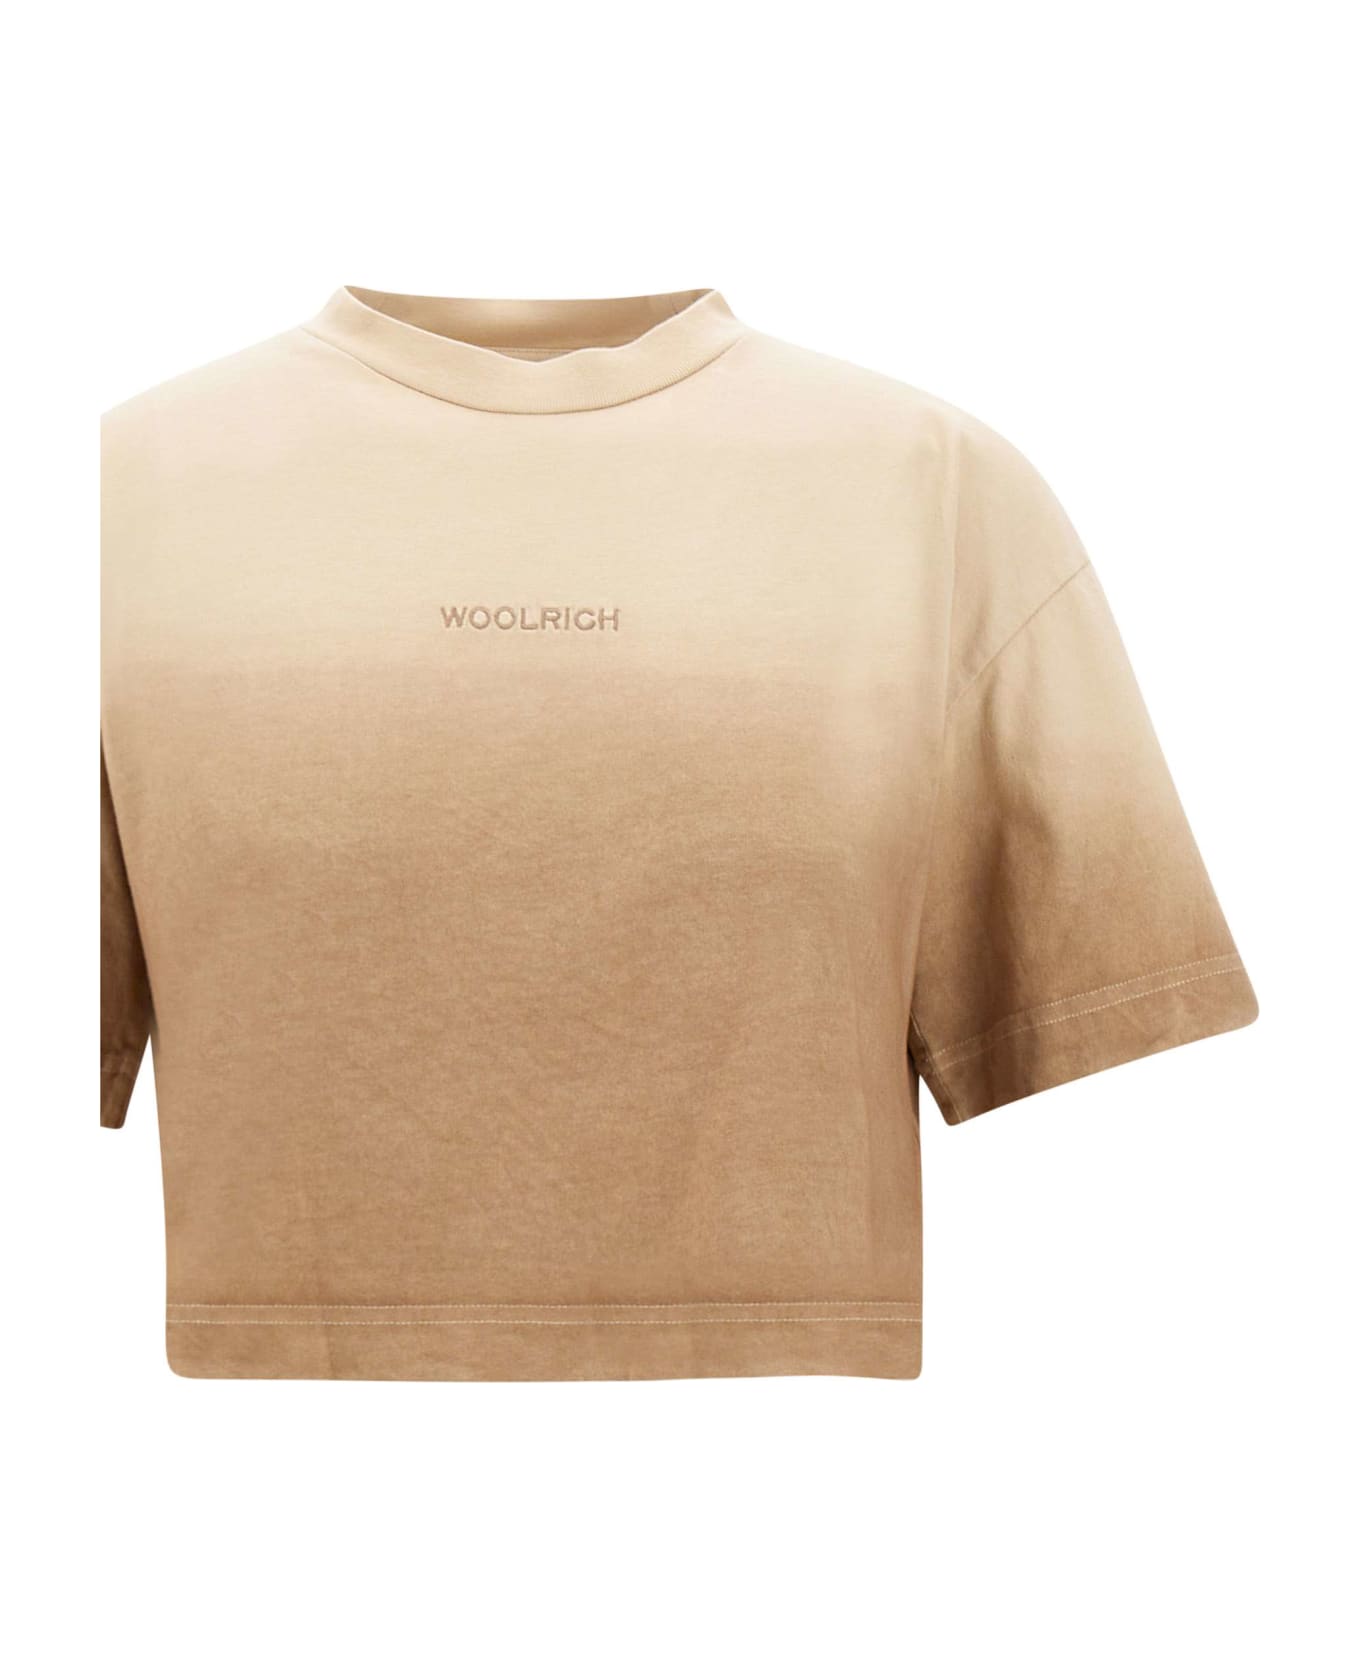 Woolrich 'dip Dye' Cotton T-shirt Tシャツ